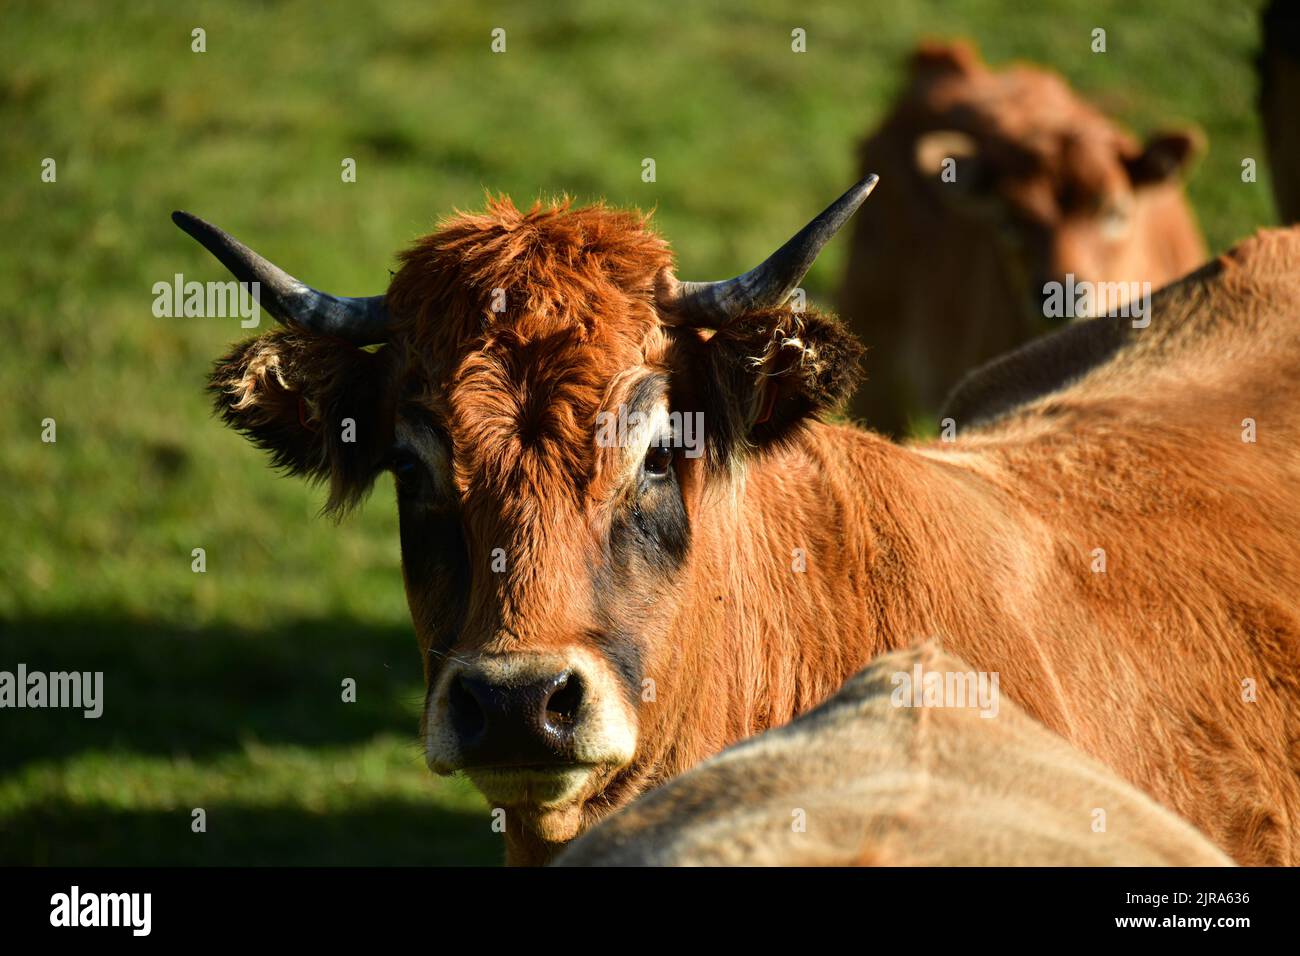 Dipartimento dell'alta Loira (Francia centro-meridionale): Mucche Aubrac, bovini. Vista frontale di una mucca tra le altre Foto Stock